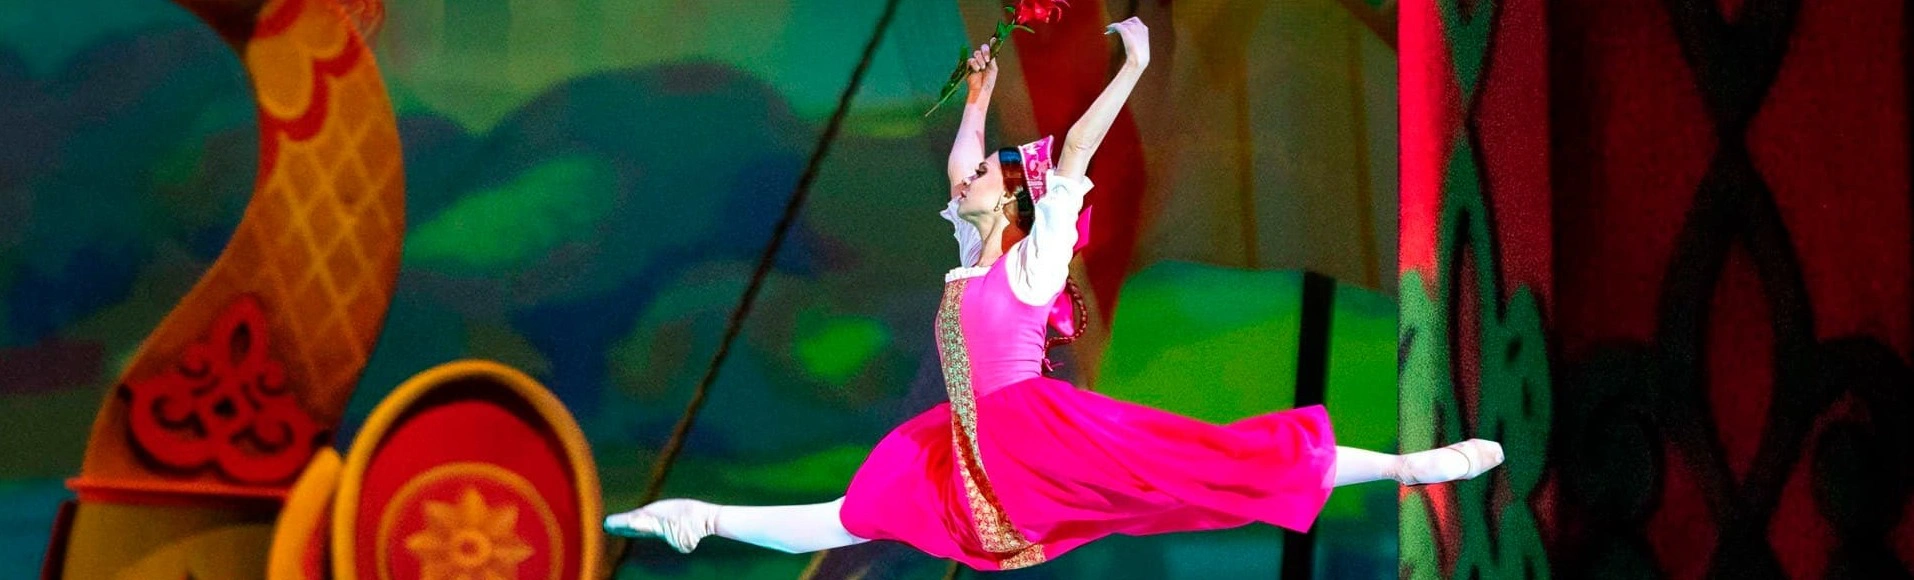 «Кремлевский балет» представляет «Аленький цветочек»
